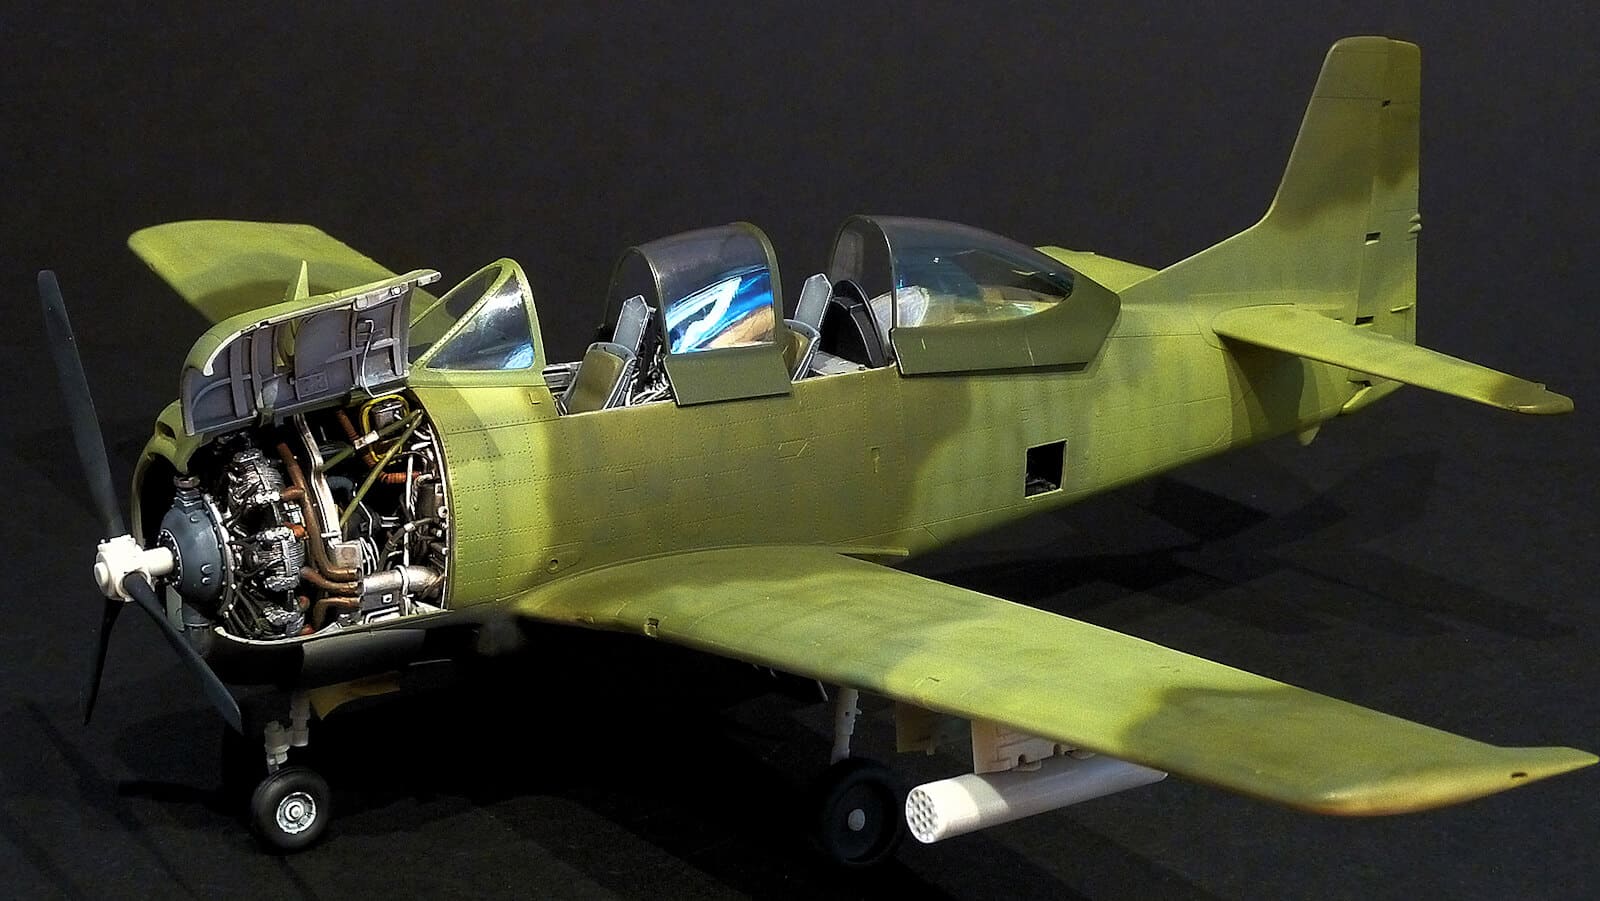 โมเดลเครื่องบิน Kittyhawk T-28B/D "Zorro" Trojan (1/32)